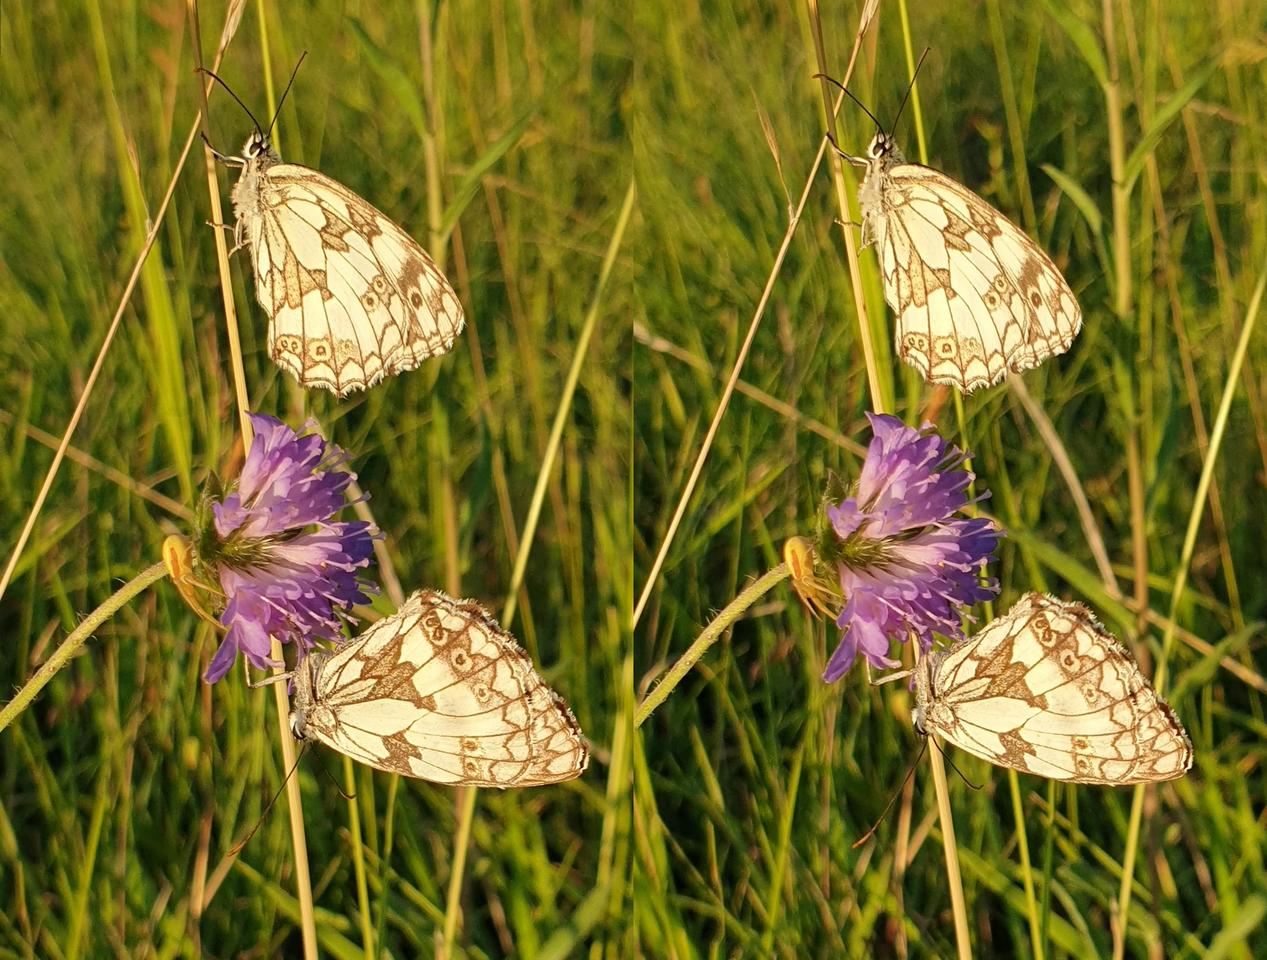 Butterflies in the evening light